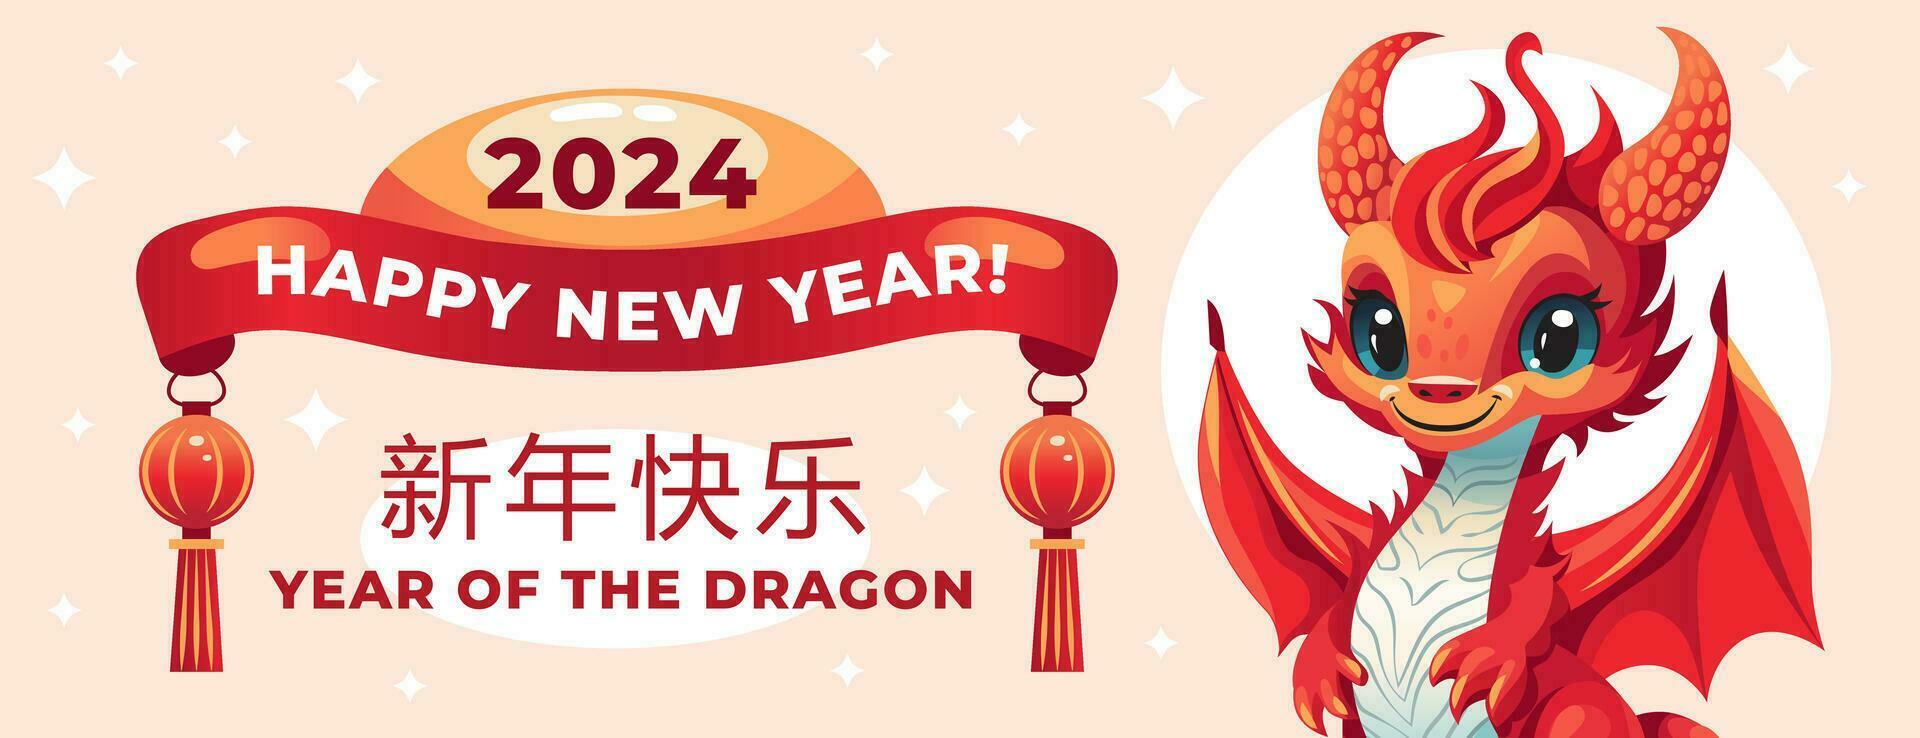 une horizontal bannière avec une mignonne dragon, le symbole de le chinois Nouveau année 2024. Traduction content Nouveau année vecteur